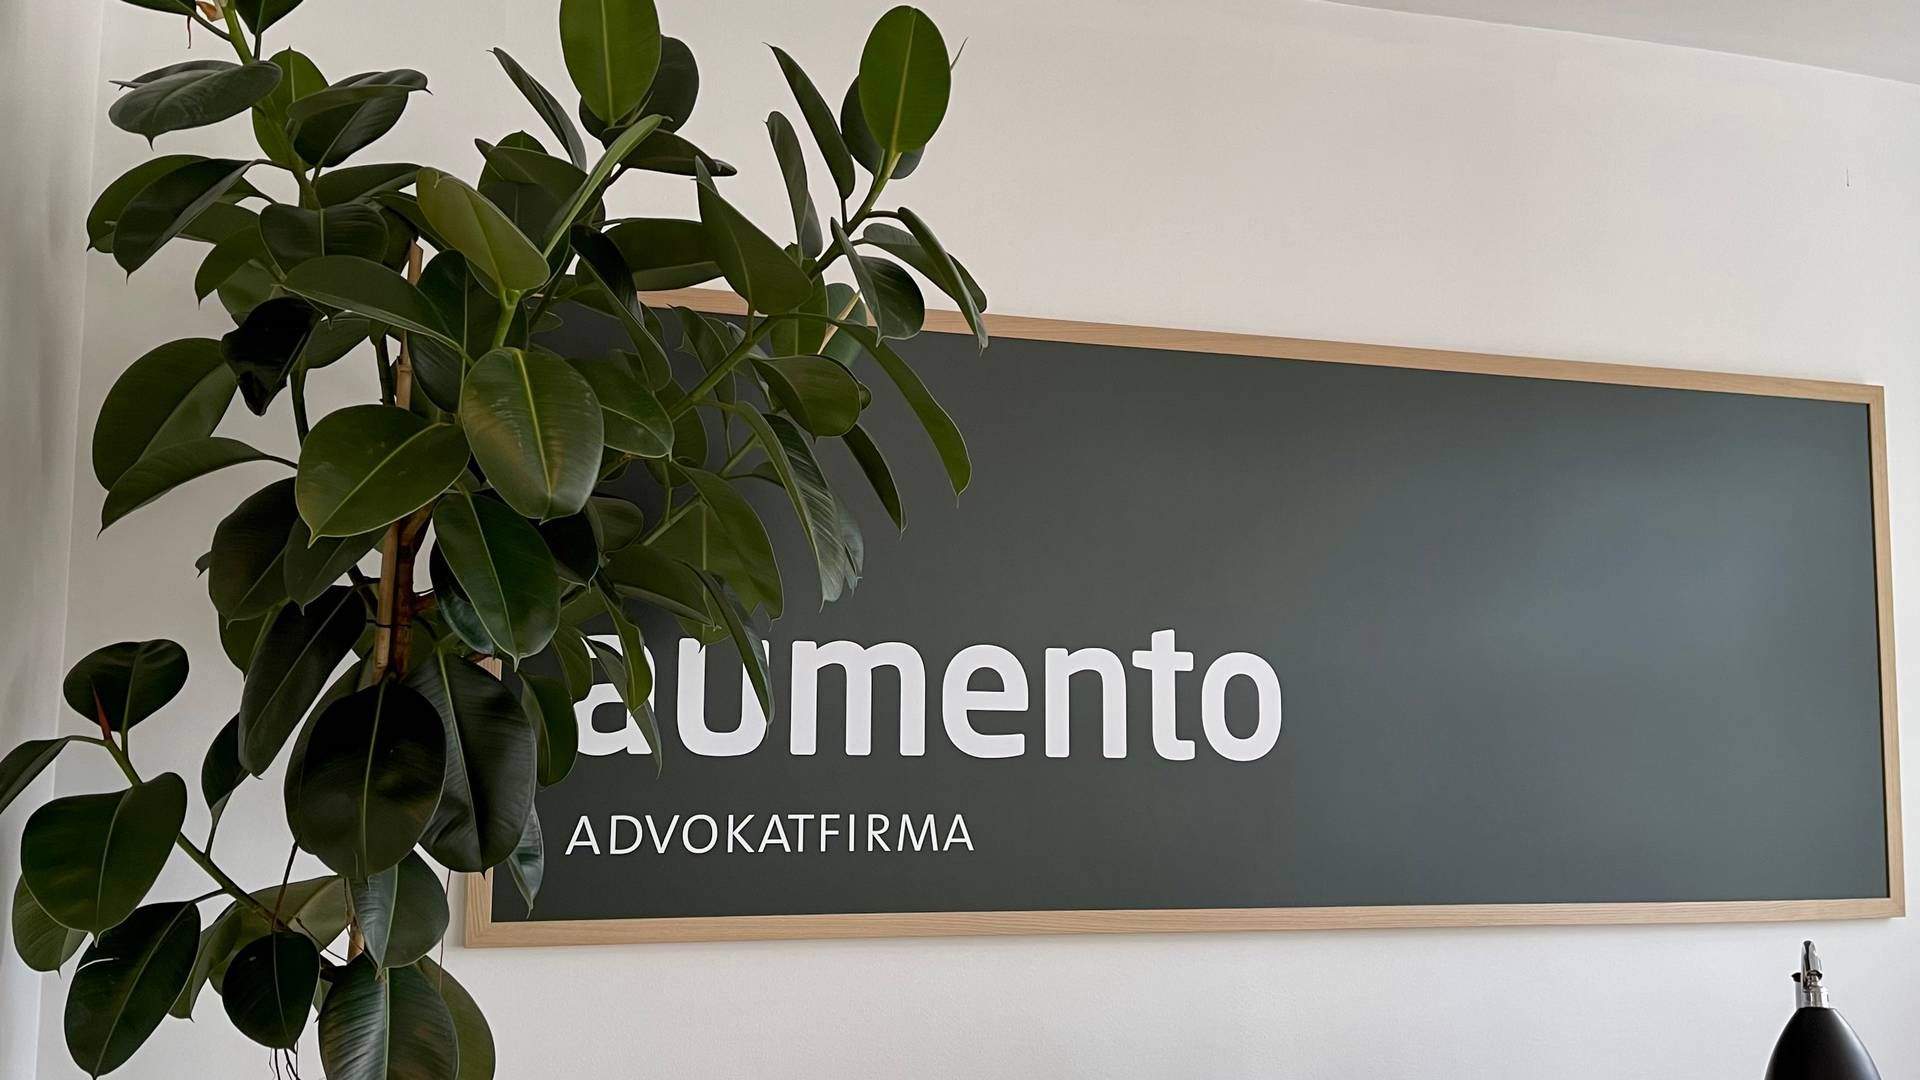 Advokaterne i Aumento markedsfører sig på samme platform. | Foto: Aumento / Pr